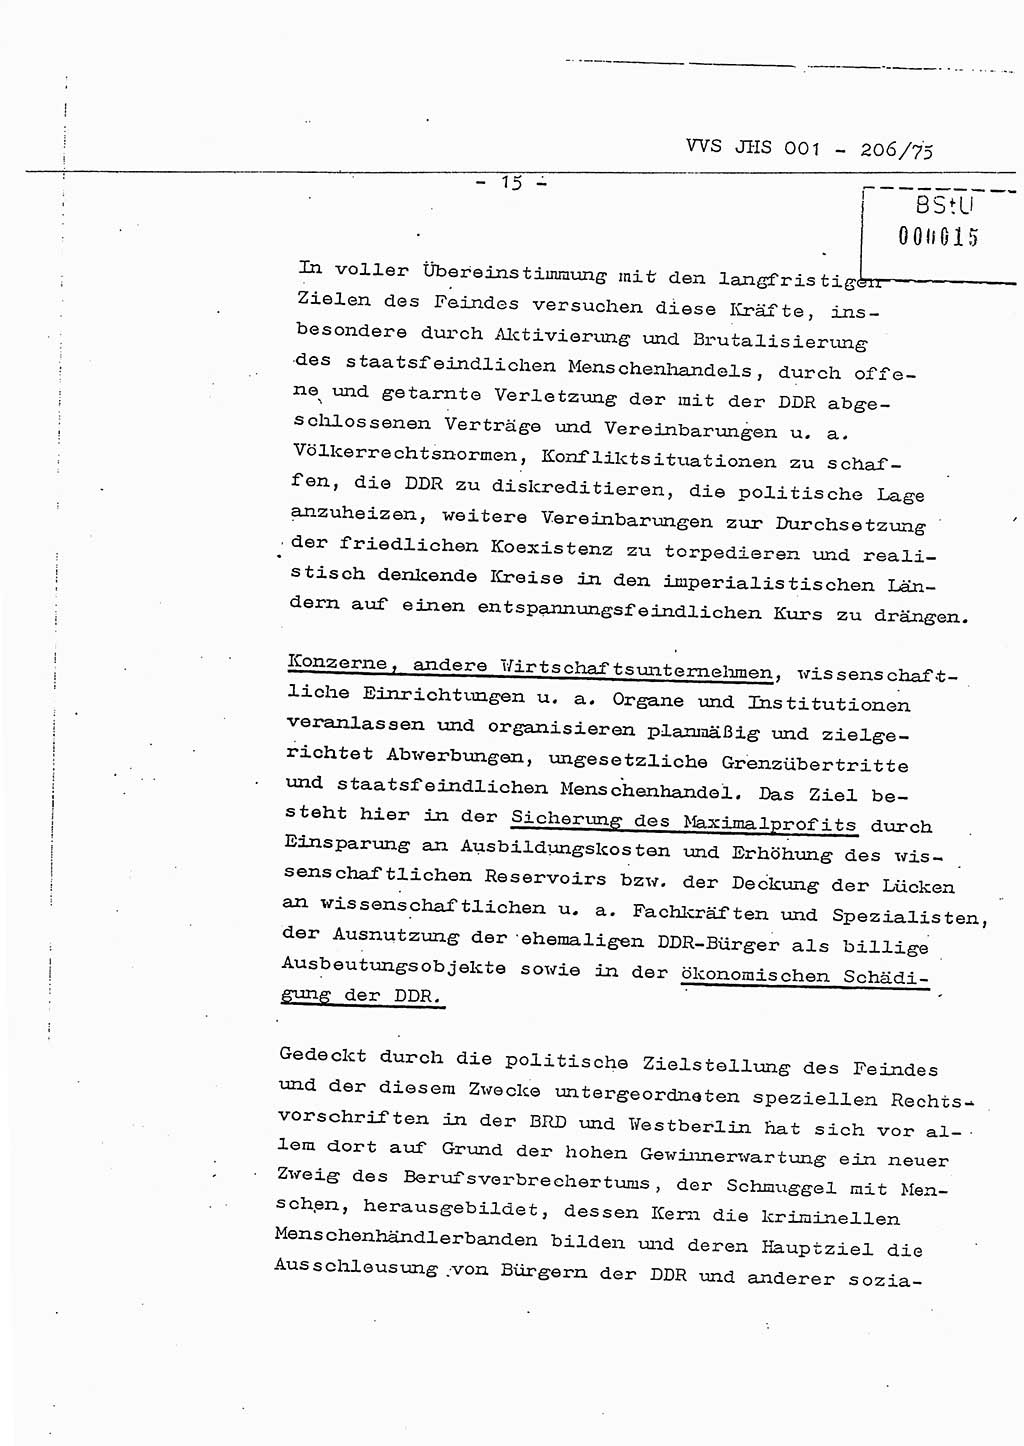 Dissertation Generalmajor Manfred Hummitzsch (Leiter der BV Leipzig), Generalmajor Heinz Fiedler (HA Ⅵ), Oberst Rolf Fister (HA Ⅸ), Ministerium für Staatssicherheit (MfS) [Deutsche Demokratische Republik (DDR)], Juristische Hochschule (JHS), Vertrauliche Verschlußsache (VVS) 001-206/75, Potsdam 1975, Seite 15 (Diss. MfS DDR JHS VVS 001-206/75 1975, S. 15)